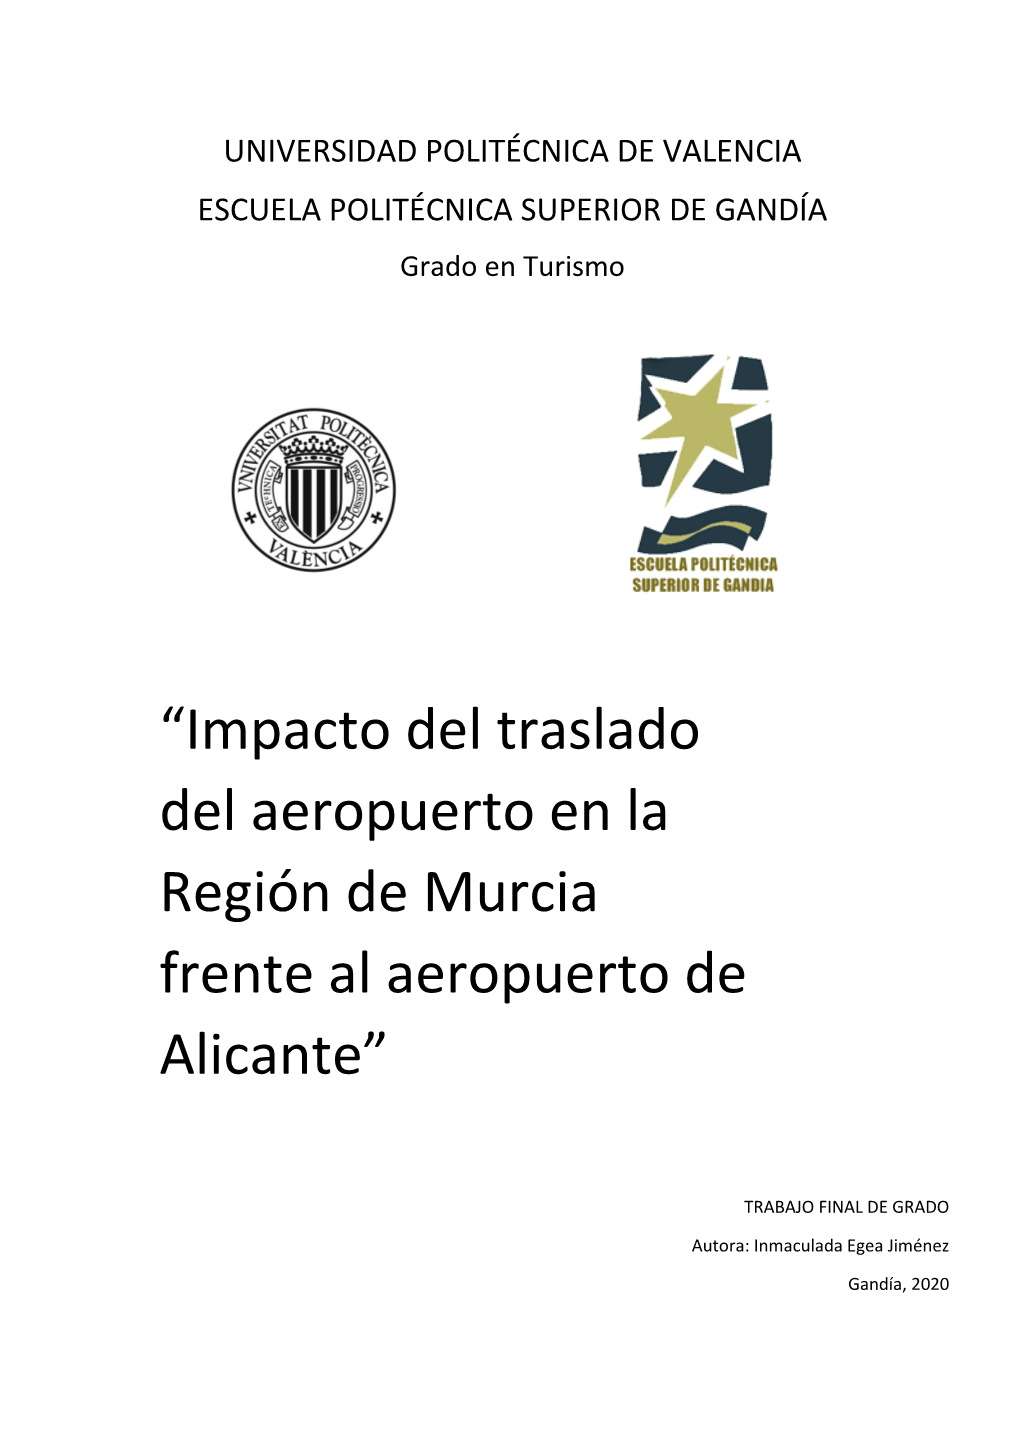 “Impacto Del Traslado Del Aeropuerto En La Región De Murcia Frente Al Aeropuerto De Alicante”